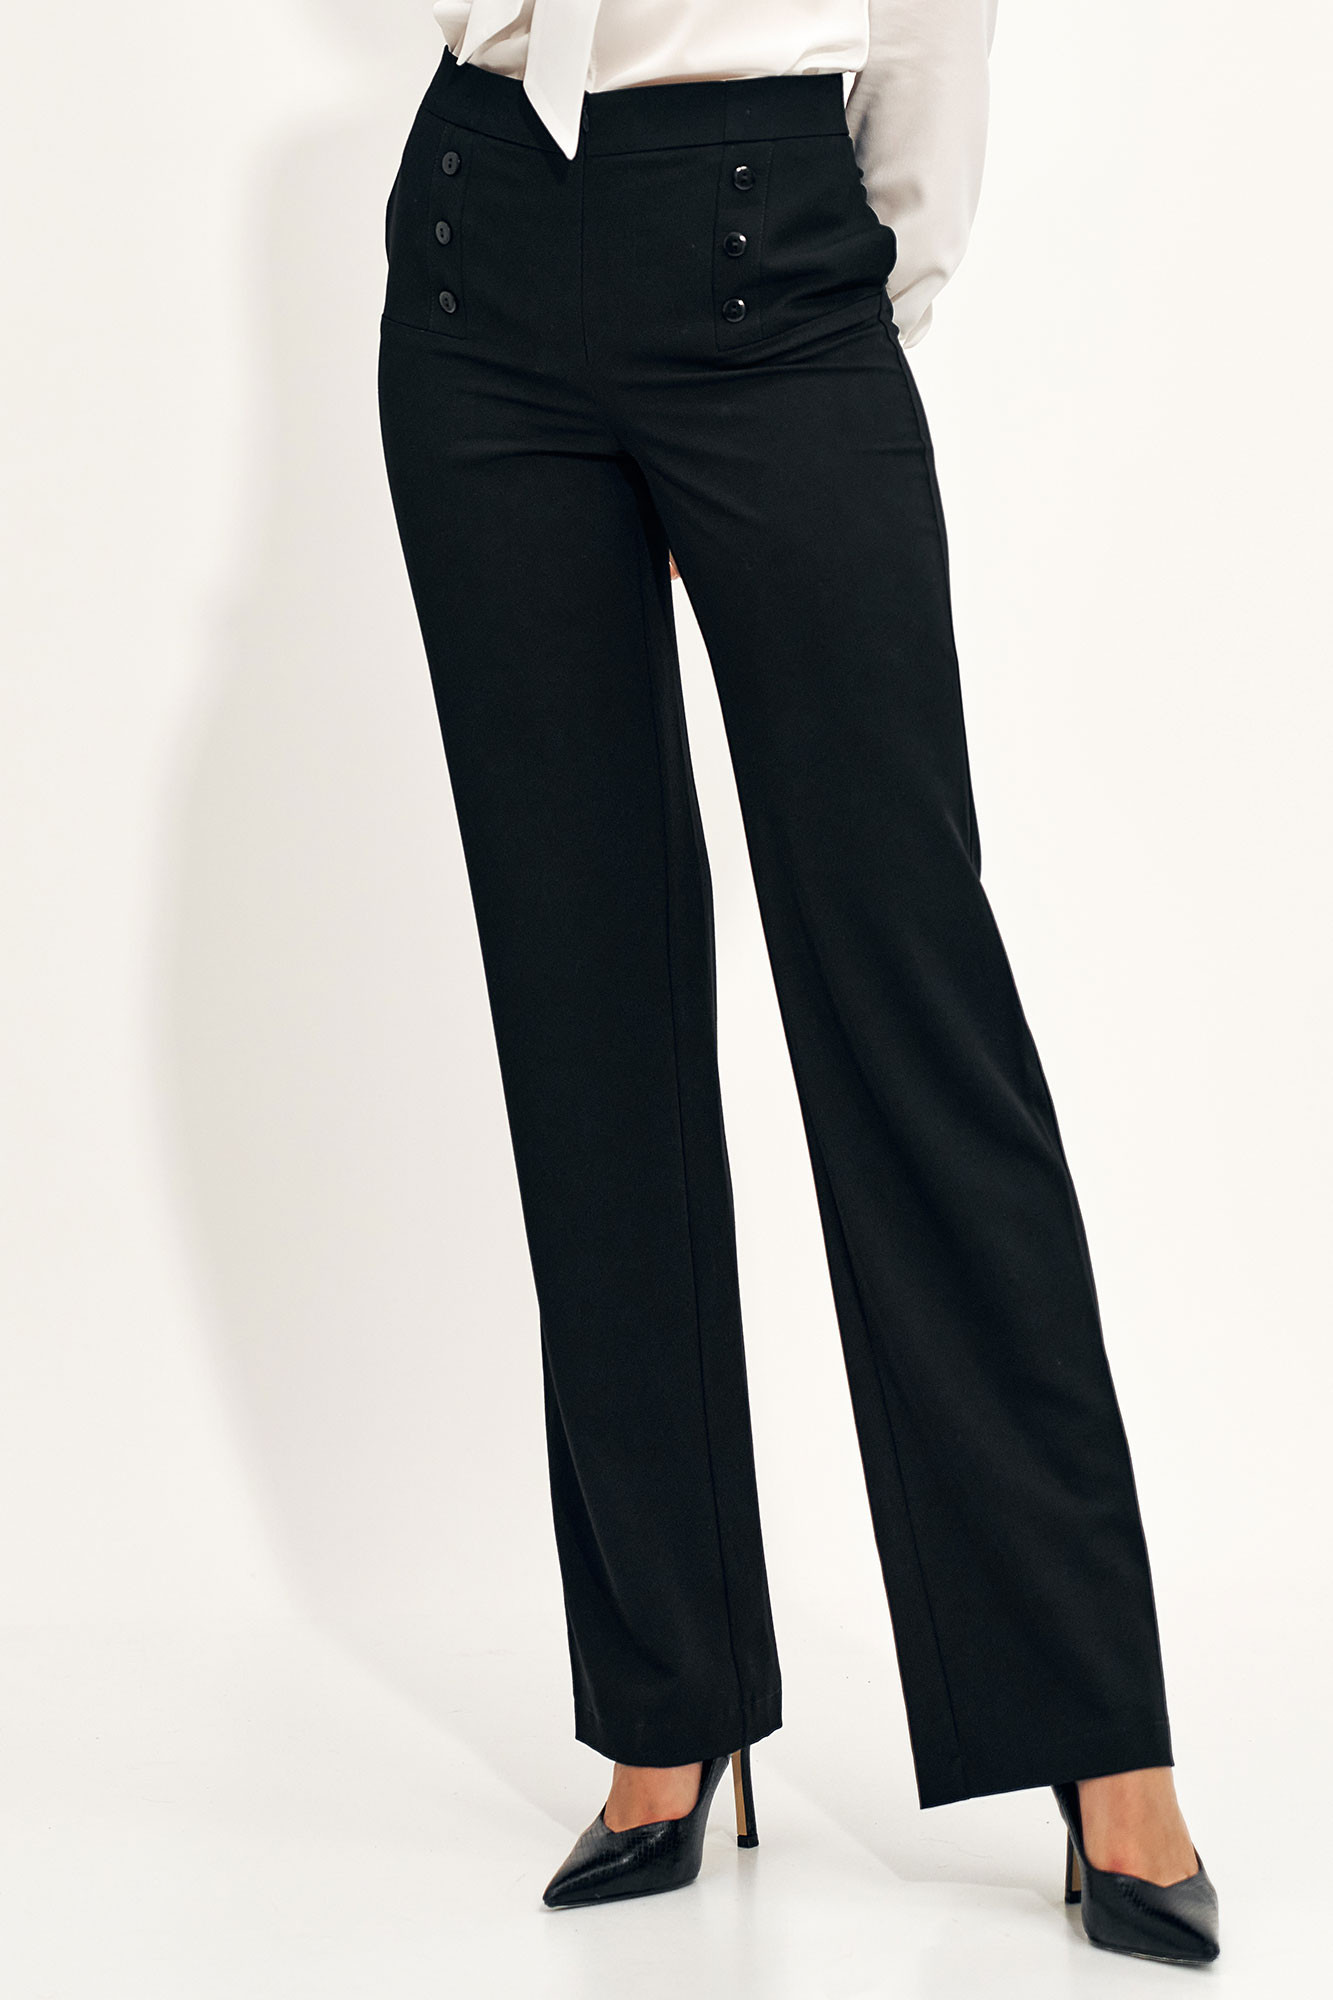 Kalhoty dámské model 18132992 černé - Nife Velikost: 42, Barvy: černá